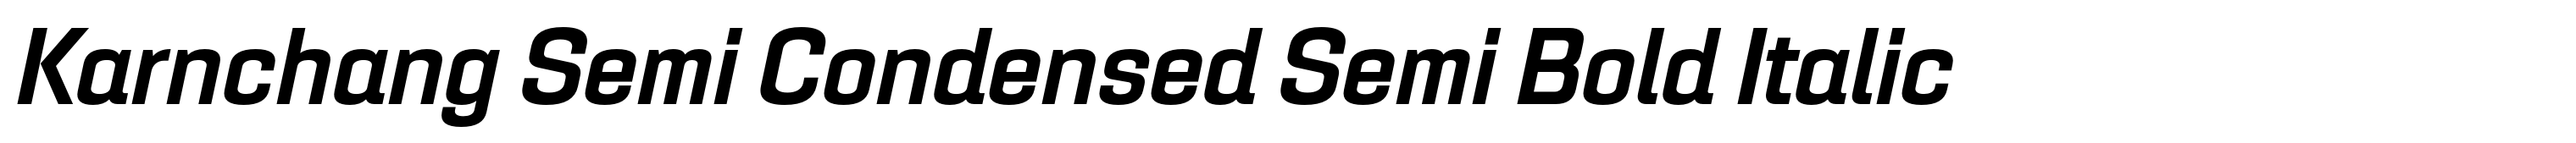 Karnchang Semi Condensed Semi Bold Italic